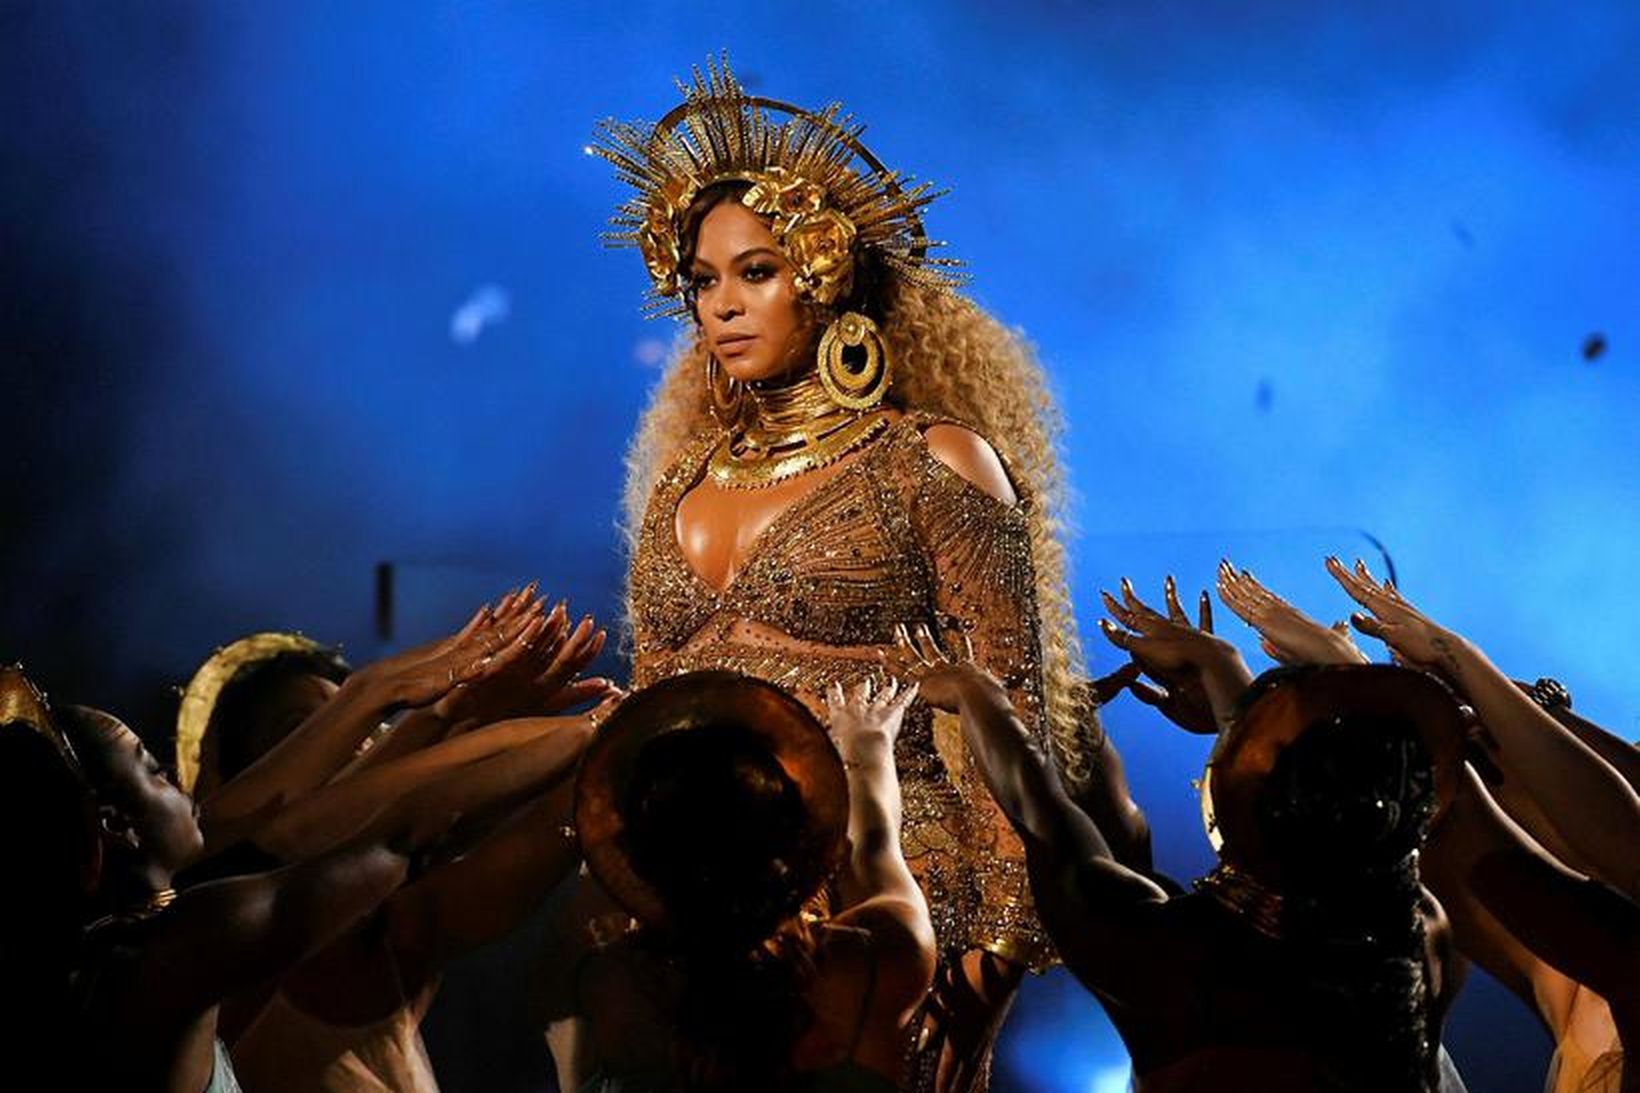 Árið 2016 var gott fyrir Beyoncé.